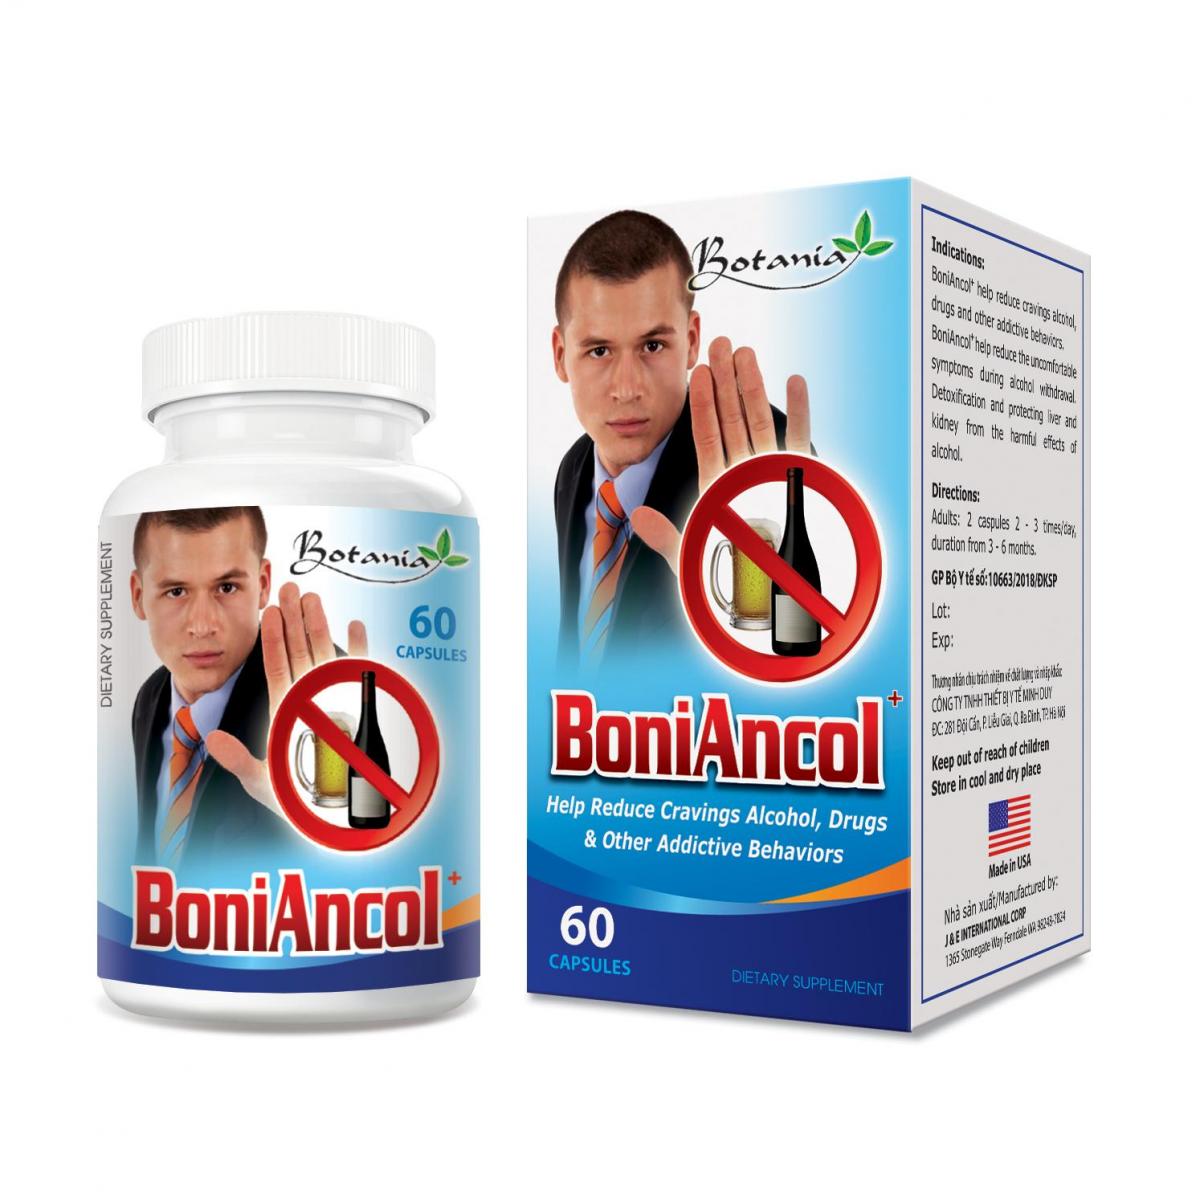 BoniAncol + - Giải pháp tối ưu nhất giúp giải rượu hiệu quả, an toàn và tiện lợi